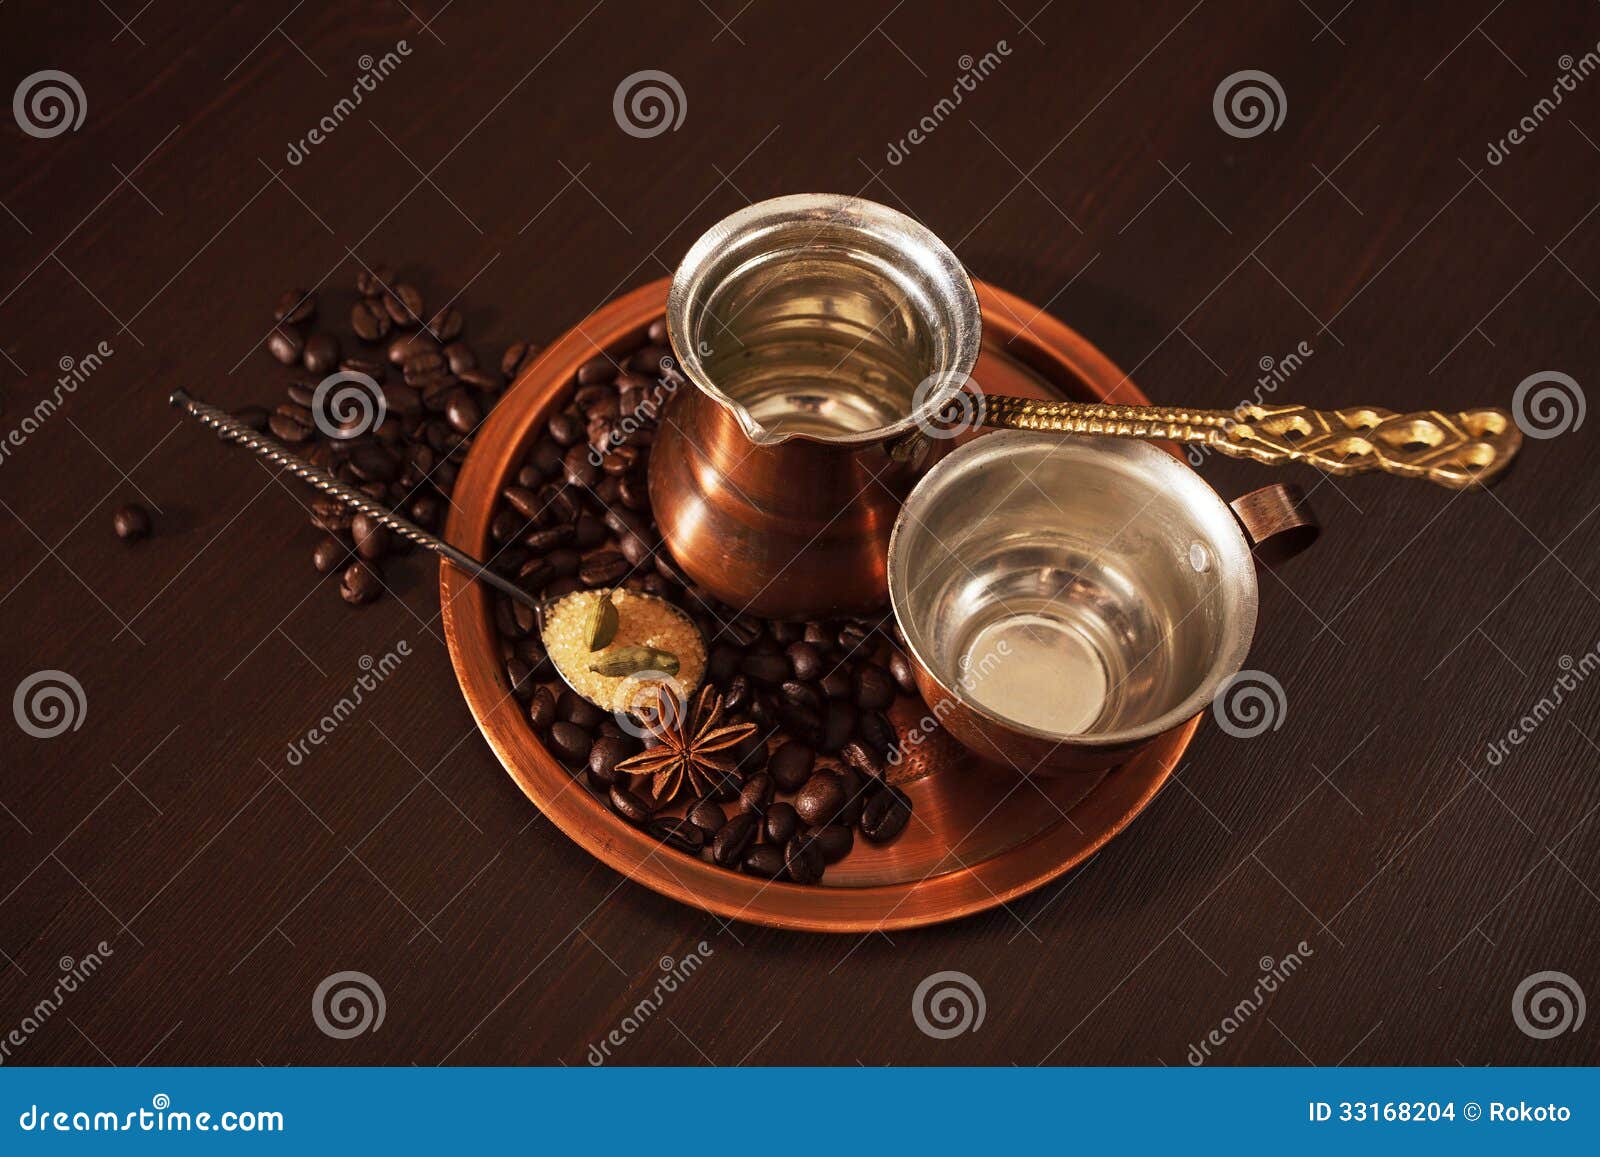 铜为做土耳其咖啡设置了用香料. 静物画、一套铜咖啡具包括板材的， cezve，是一个土耳其咖啡罐和杯子。也有咖啡豆、一个在板材的茶匙红糖和香料。黑暗的木背景。